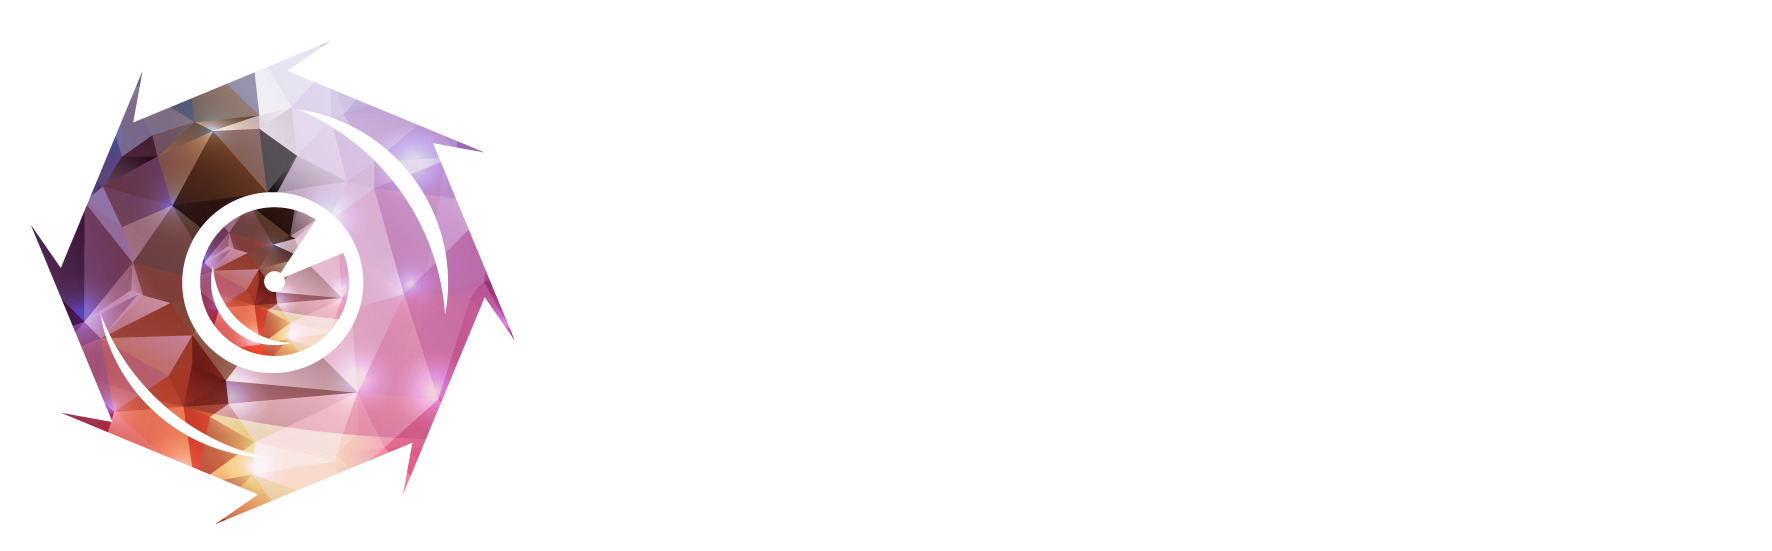 香港攝影師網 Hong Kong Photographer